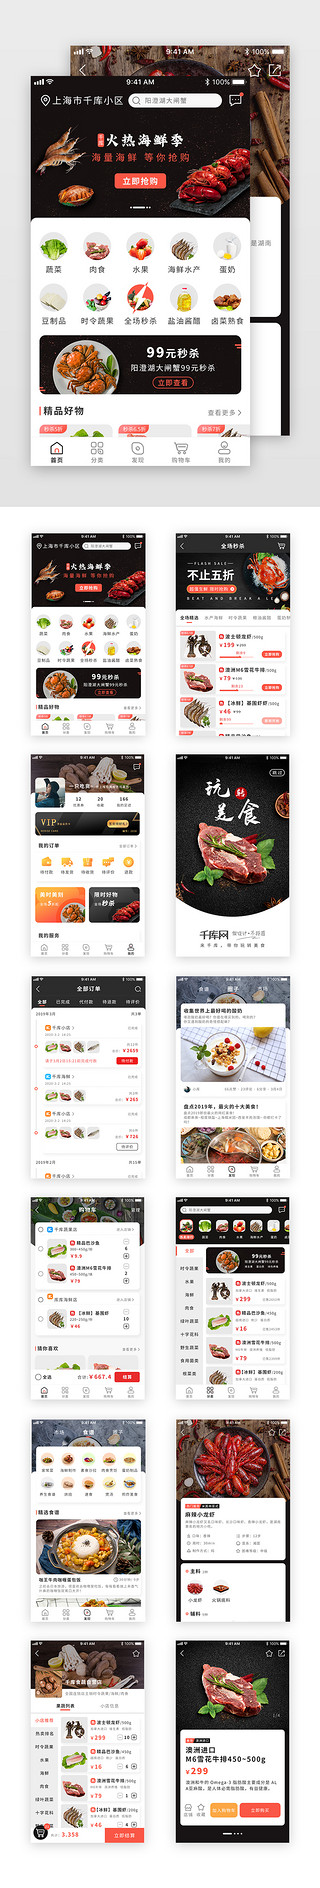 暗色界面UI设计素材_偏国外风生鲜购物美食APP套图